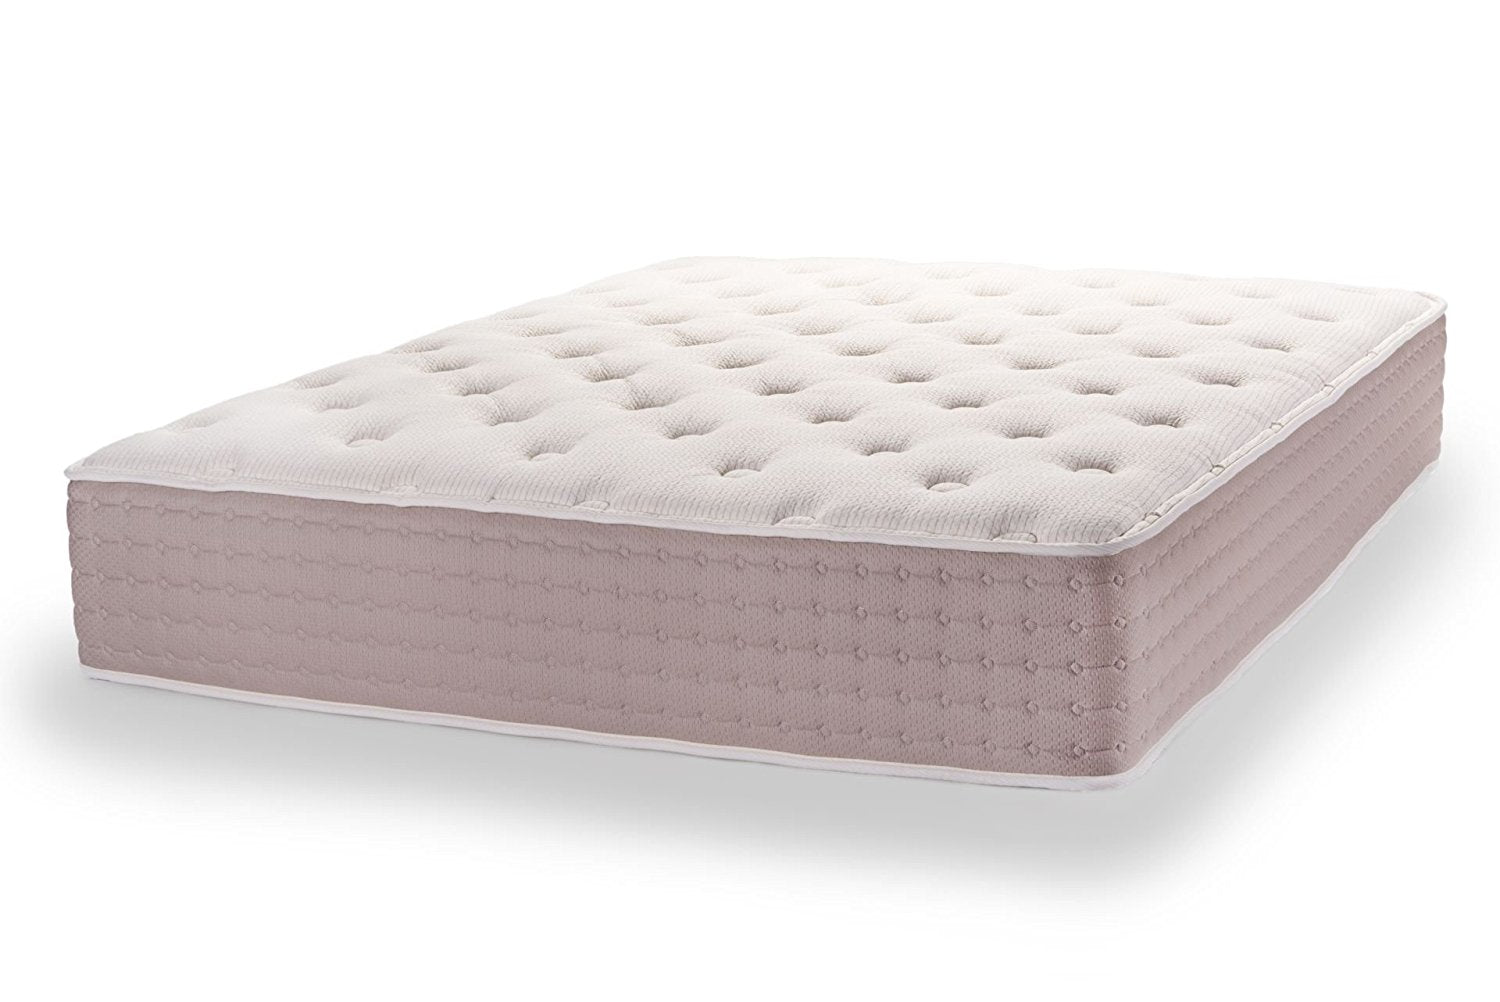 dunlop latex mattress amazon